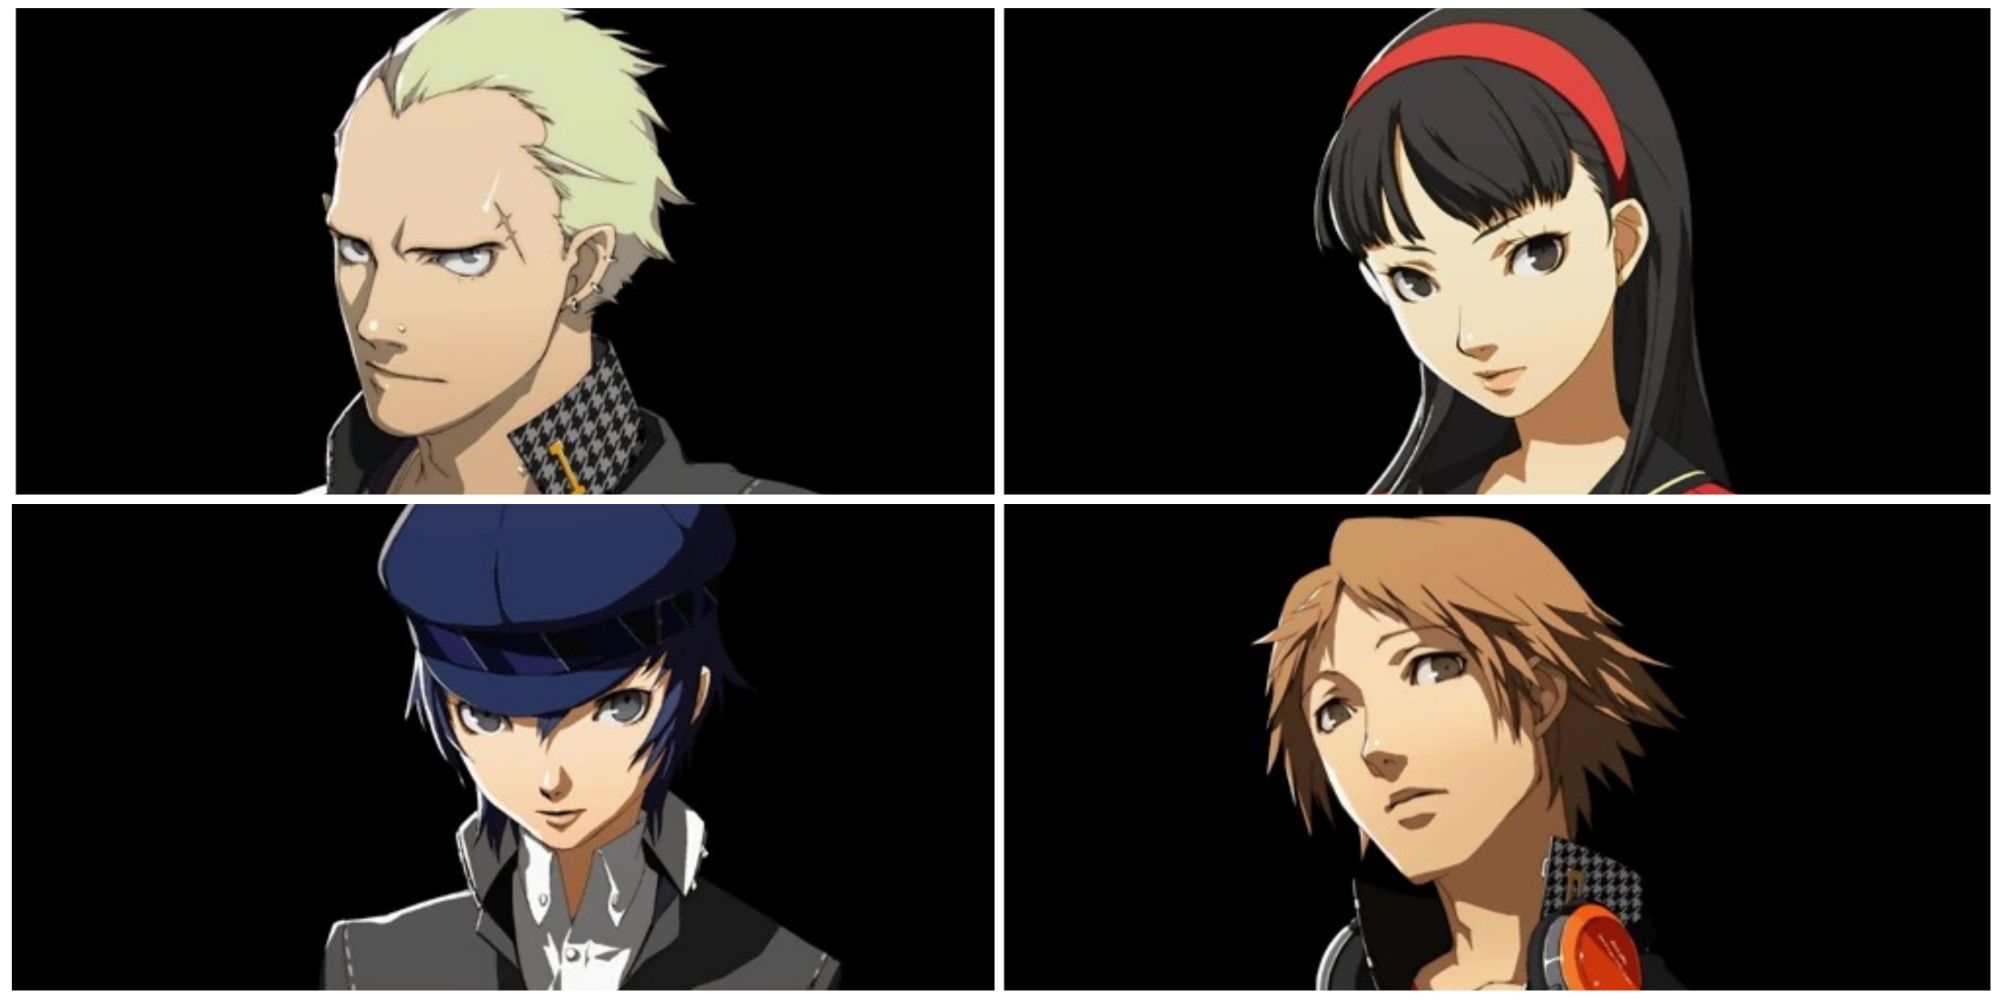 Kanji, Yukiko, Naoto, and Yosuke from Persona 4